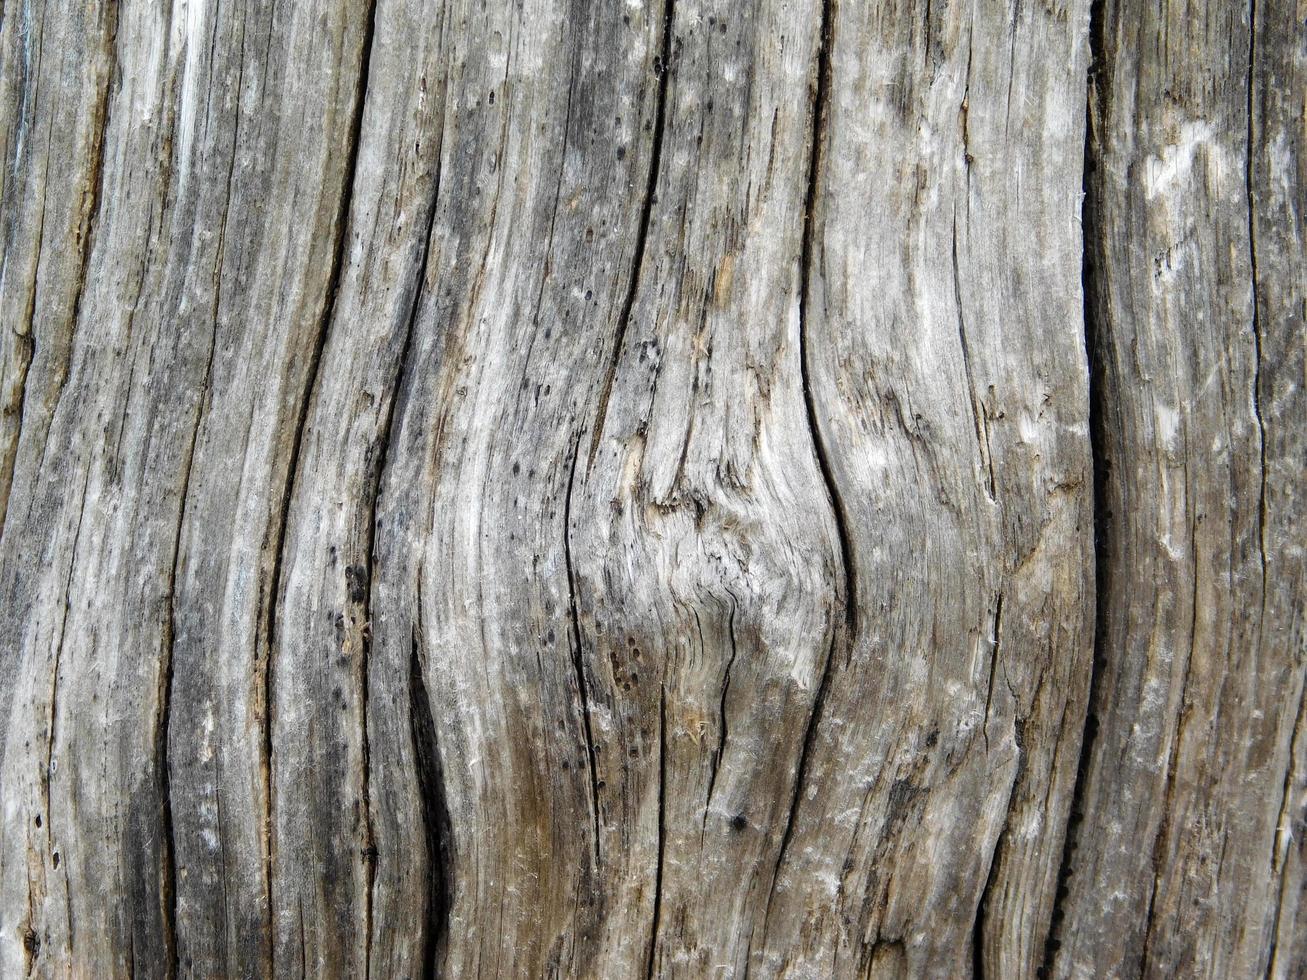 textura de madera al aire libre foto